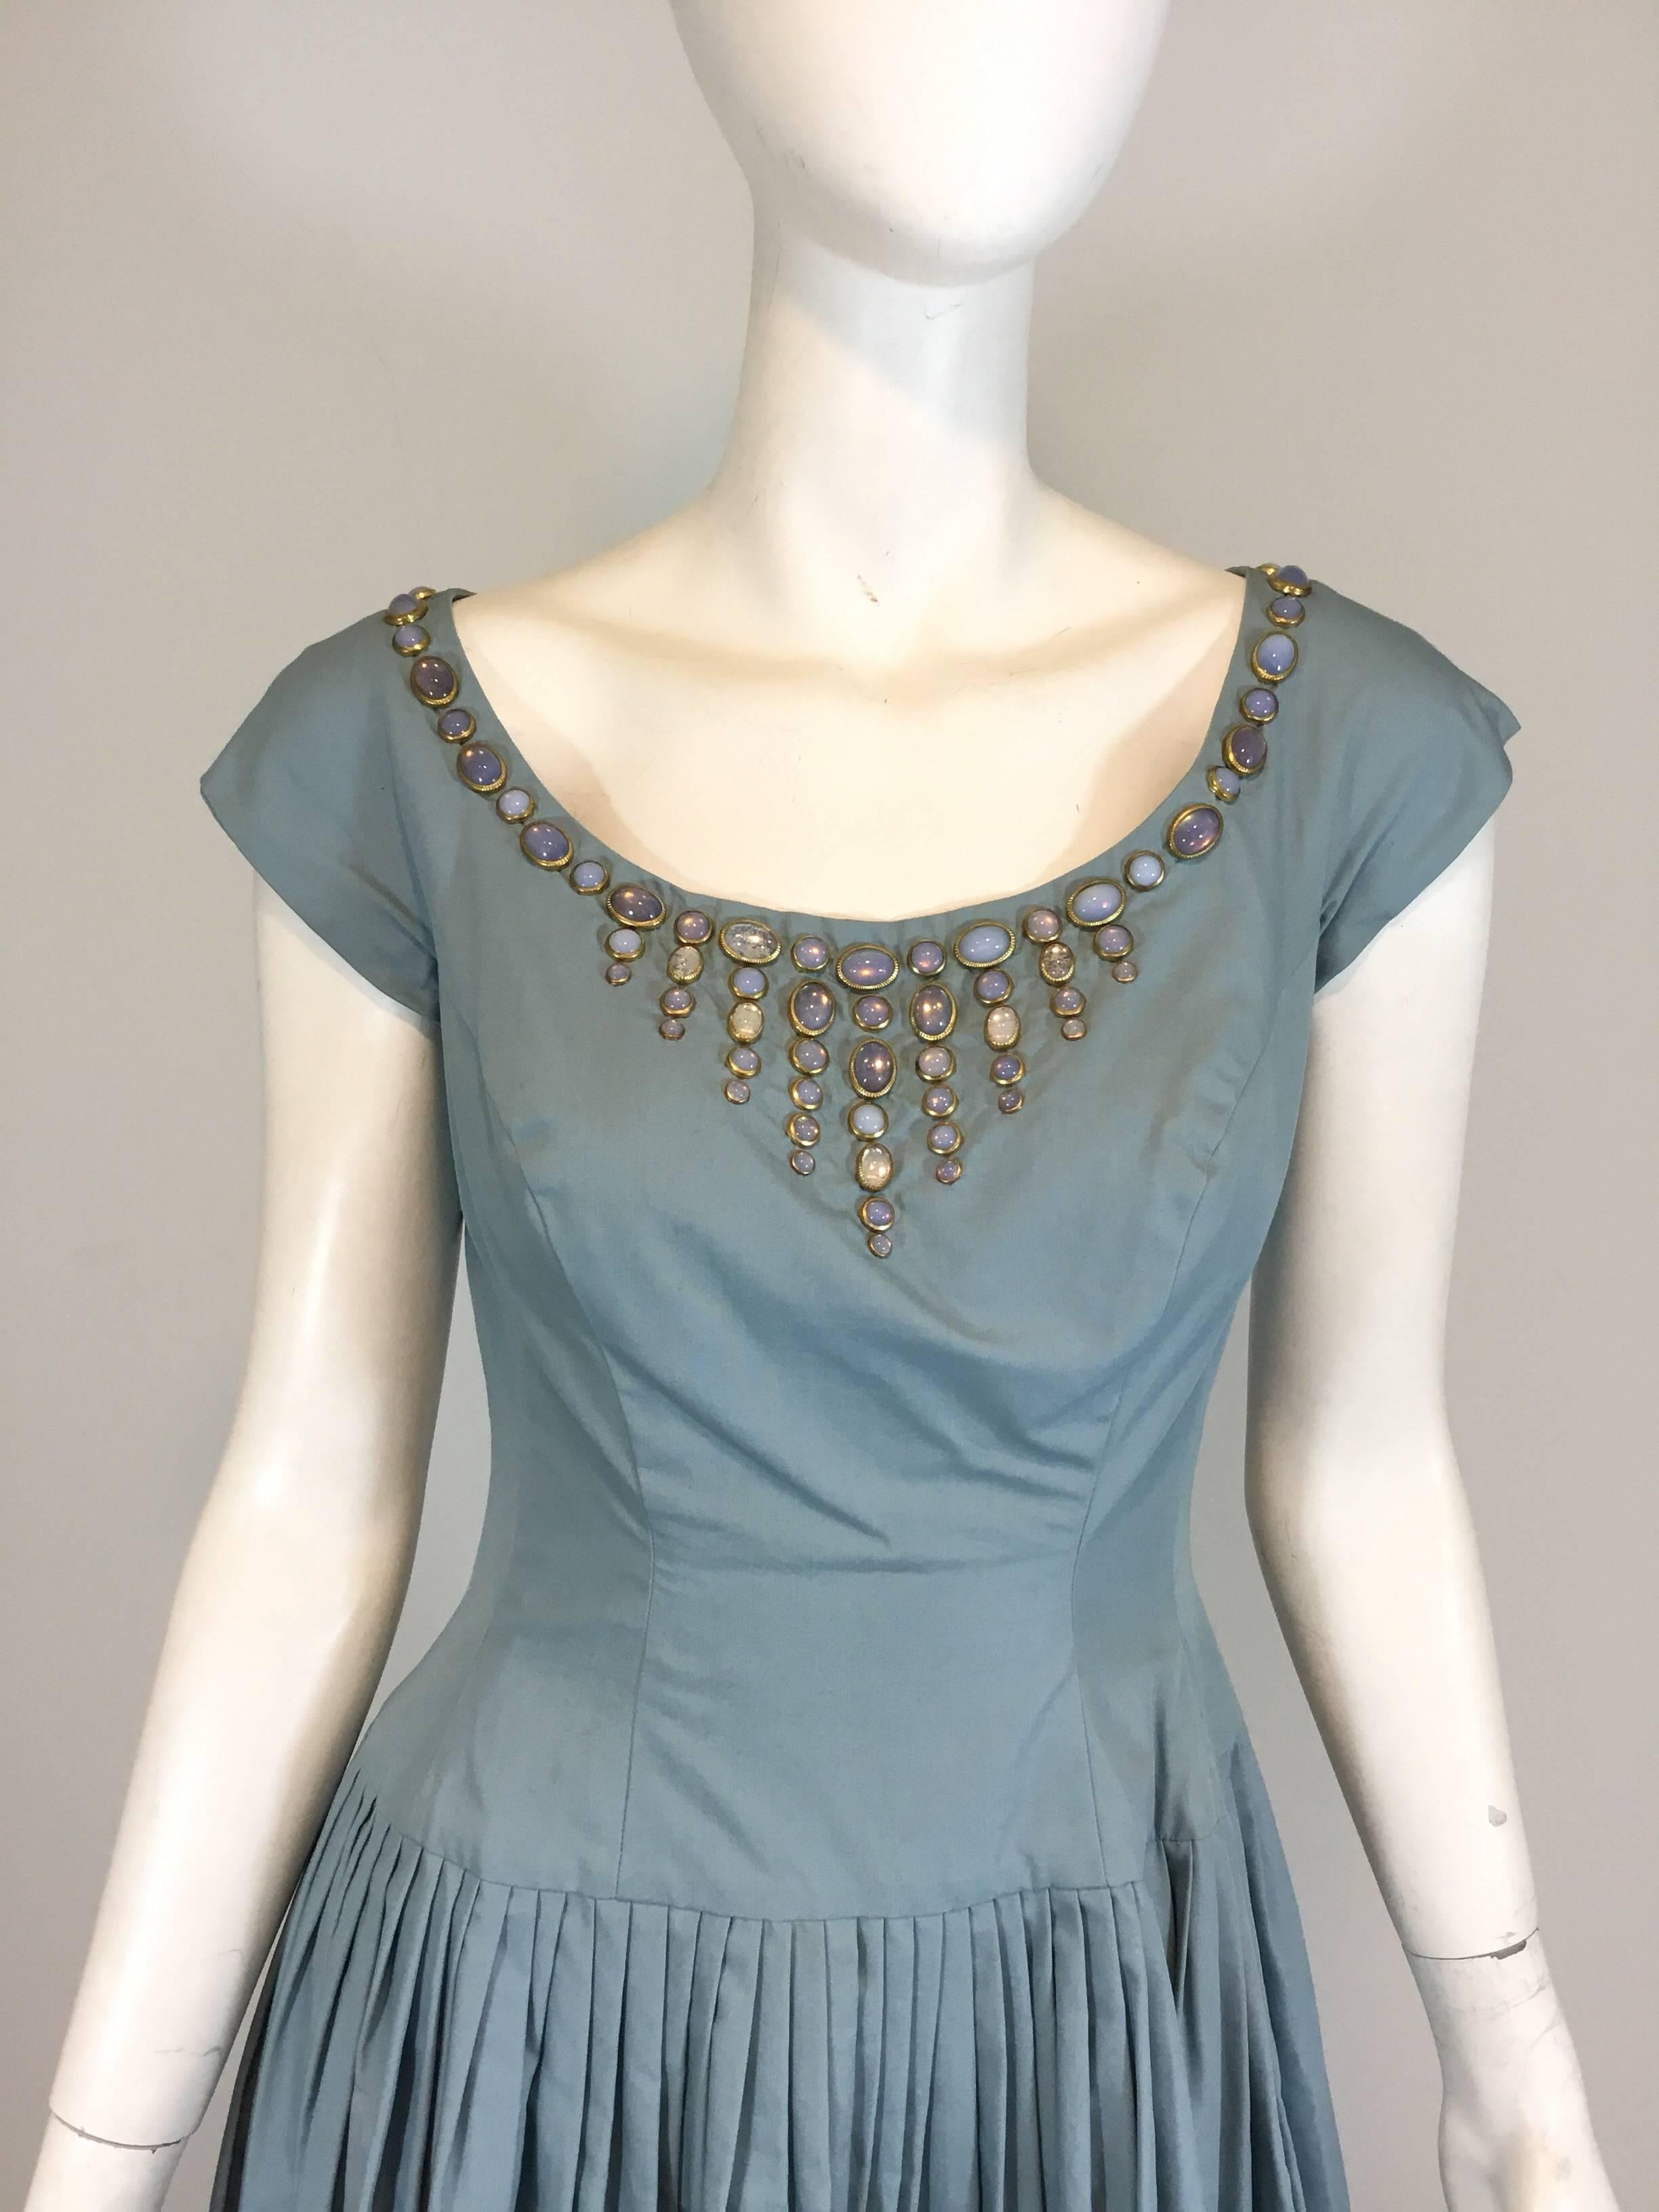 I. Robe Vintage Magnin des années 1950, bleu clair, avec encolure ornée de bijoux en fausse pierre de lune, jupe pintuckée et fermeture éclair au dos. Les bijoux sont sertis dans un métal de type goldstone et sont de forme cabochon. Excellent